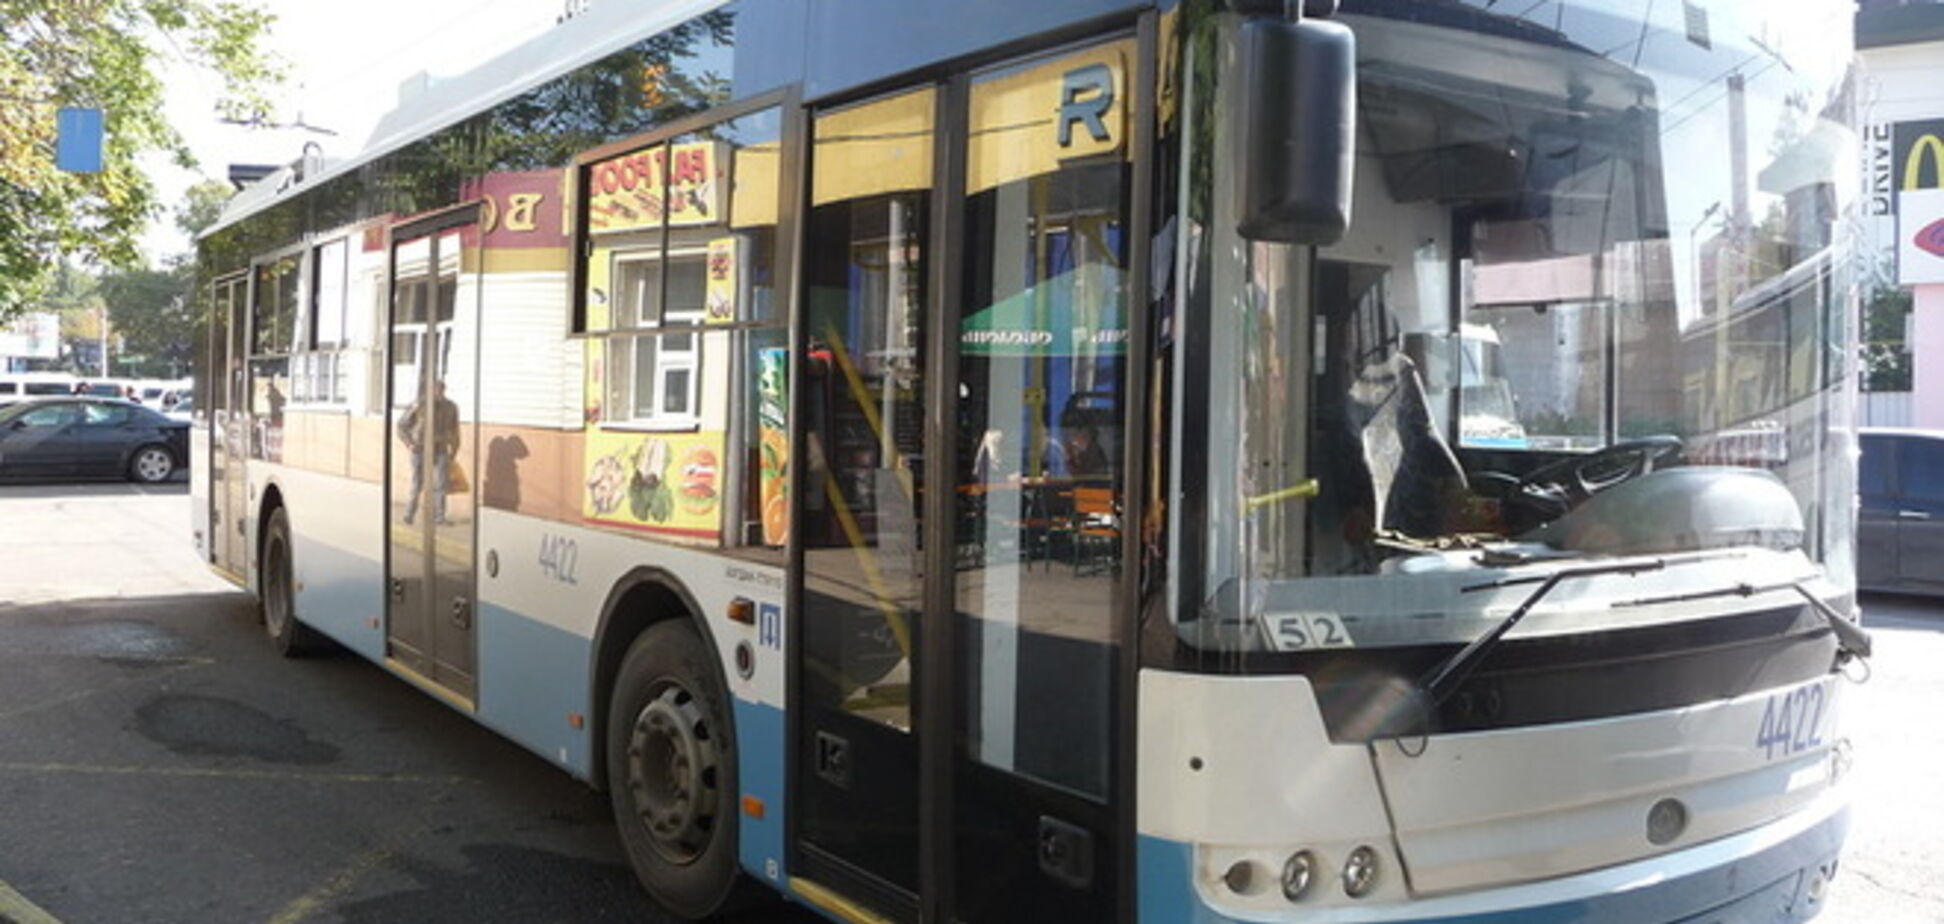 Через відключення світла в Сімферополі погоріли 4 тролейбуси: кримчани бояться нових стрибків напруги